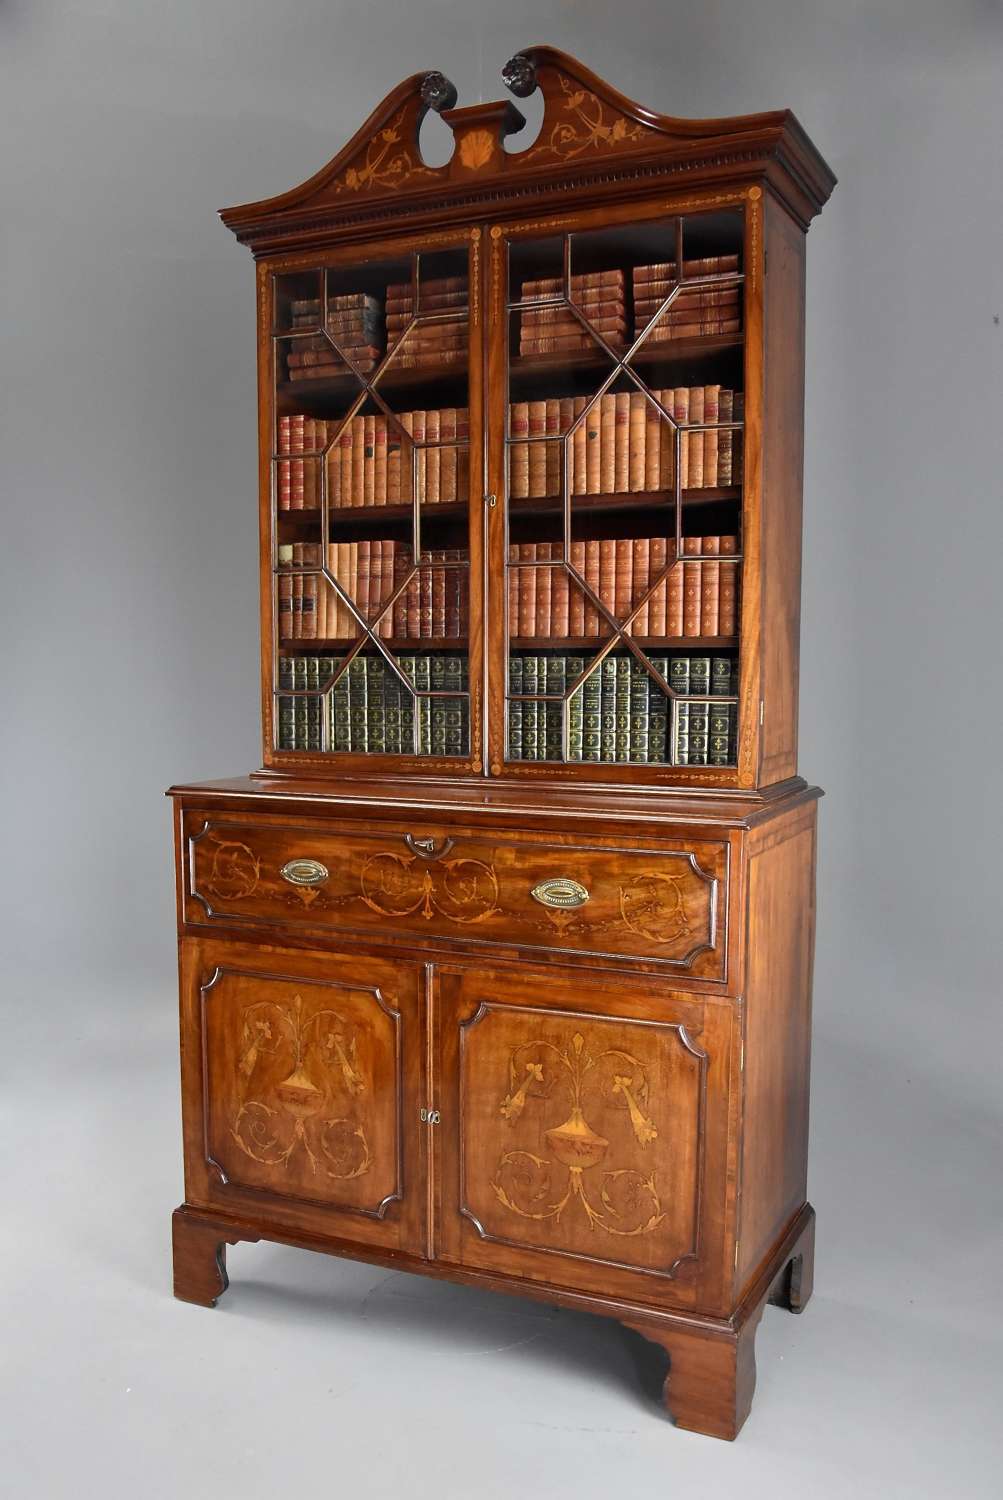 Fine quality Sheraton period mahogany secretaire bookcase